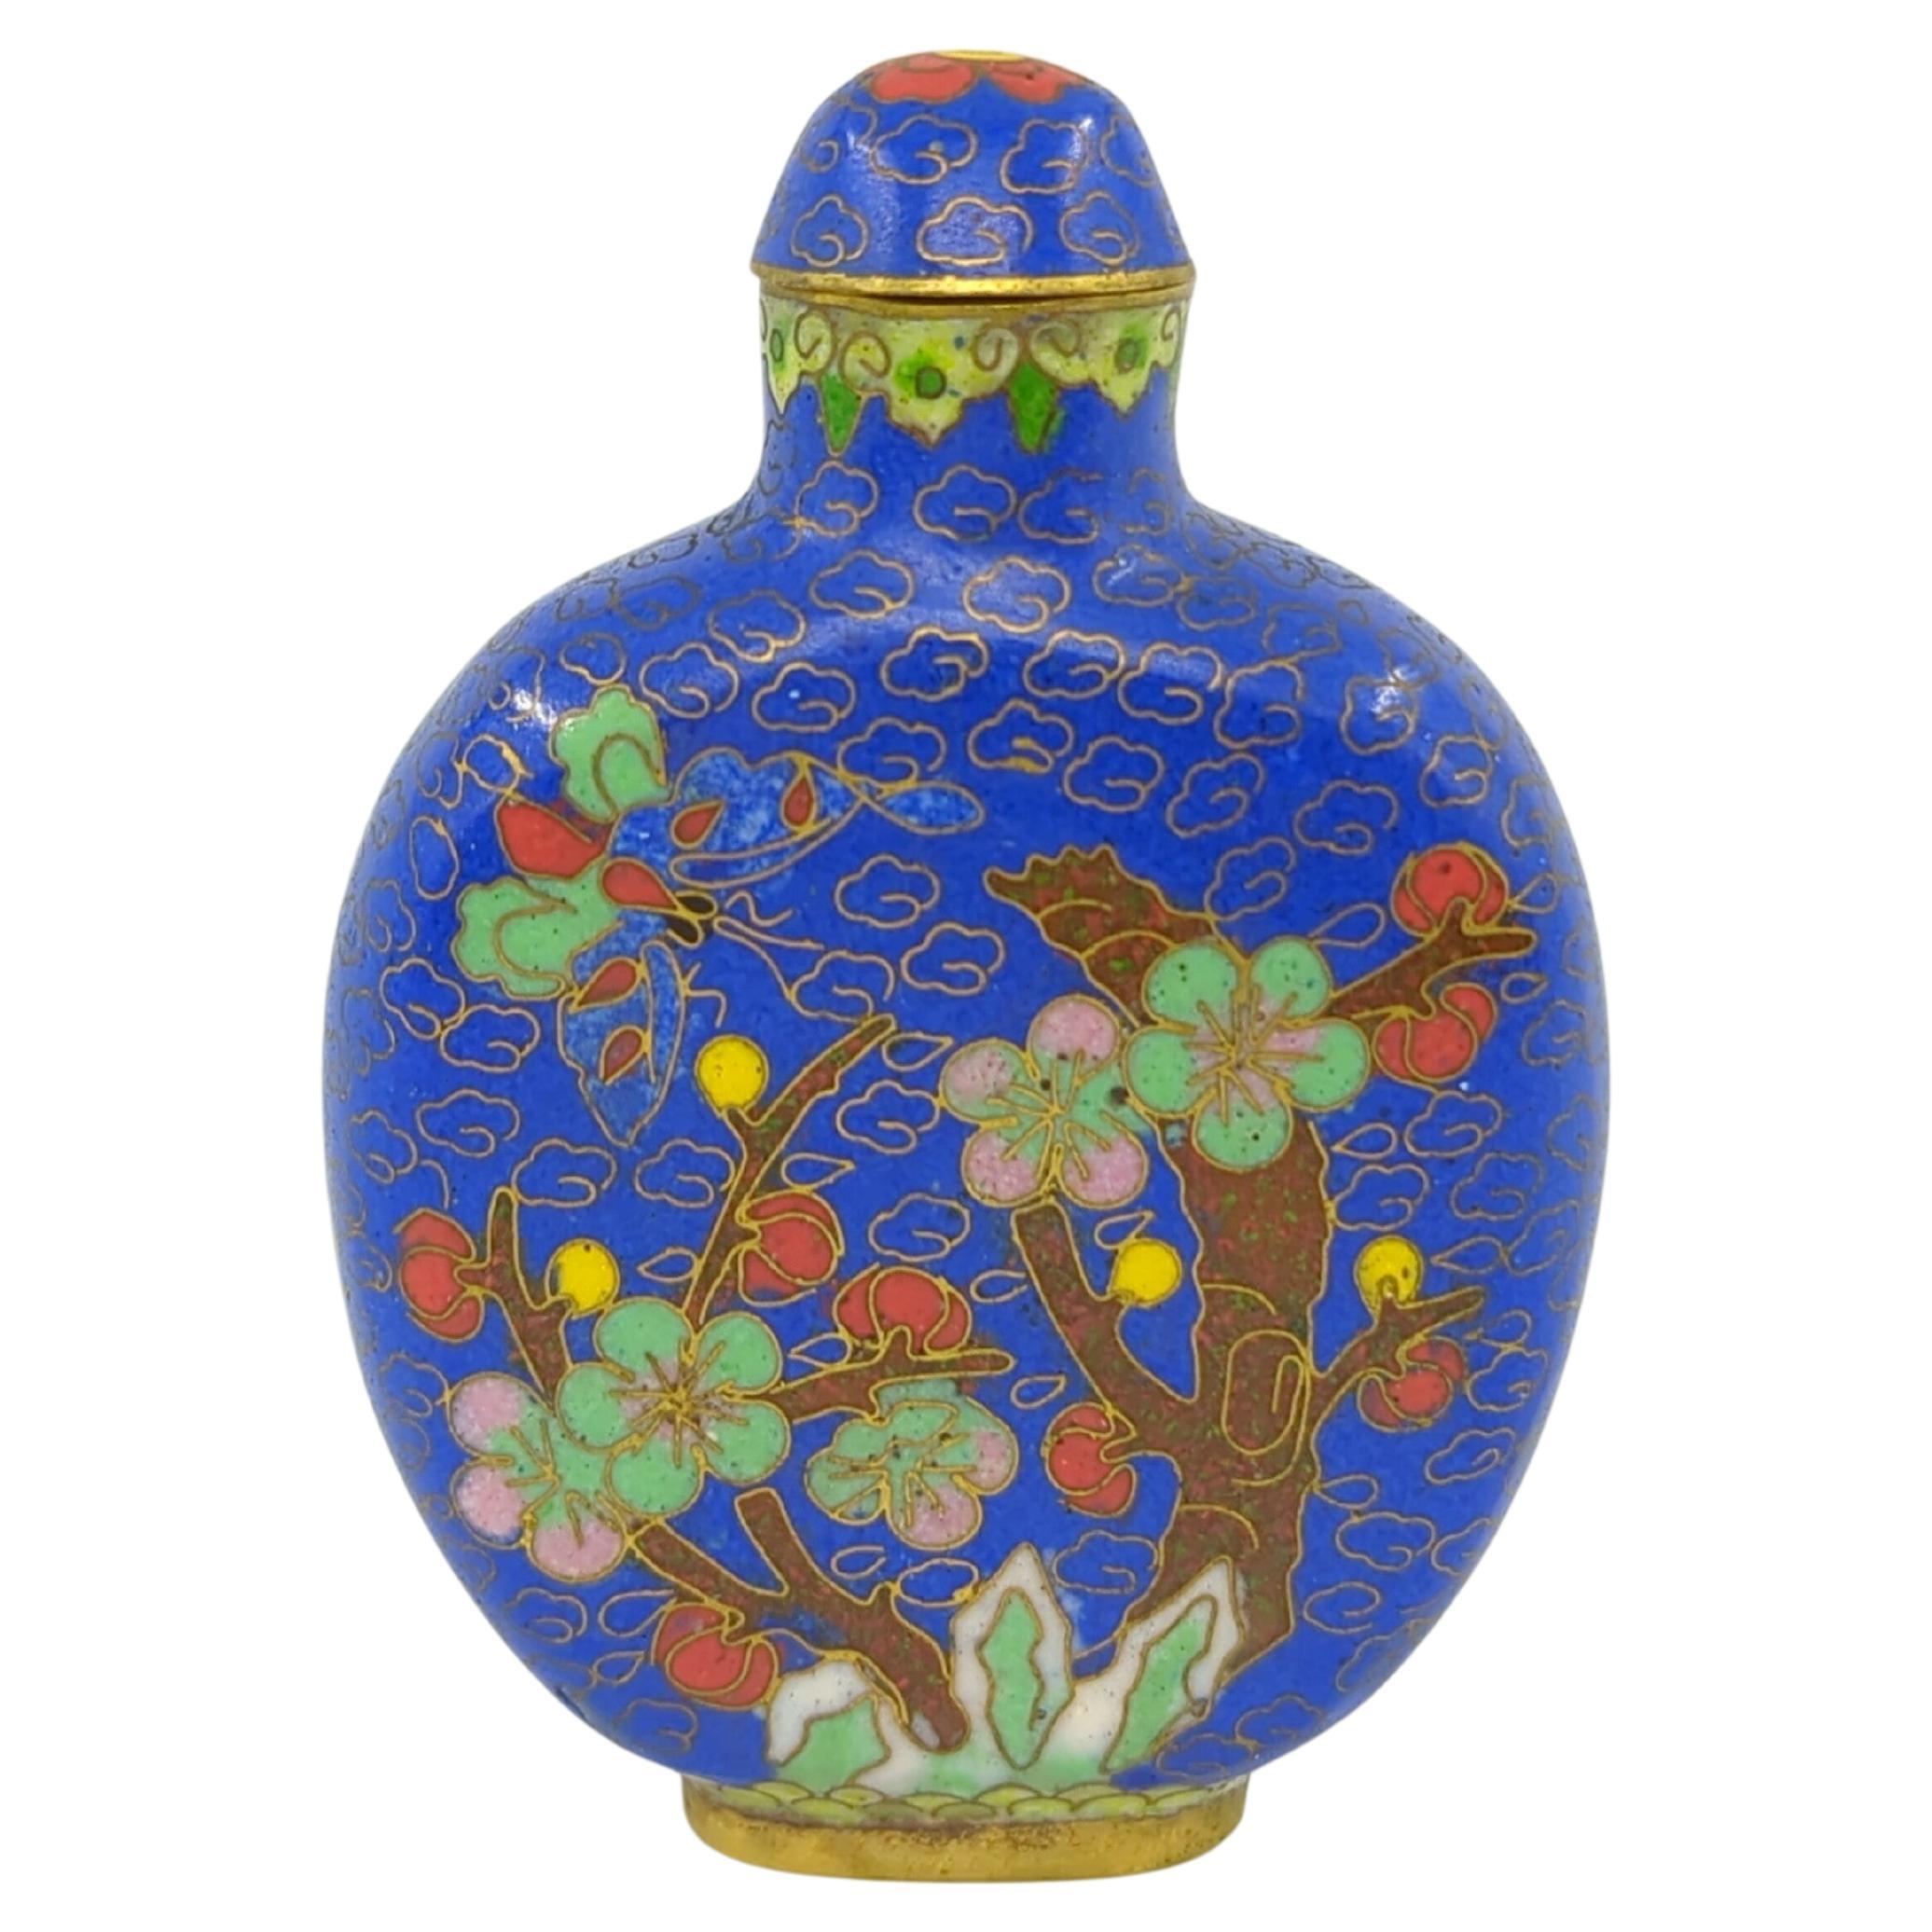 Flacon à priser vintage en cloisonne chinois sur fond bleu saphir royal, décoré d'une scène d'arbre en fleurs coloré et d'un papillon multicolore de chaque côté, d'une bordure de feuilles de ruyi sous le bord, reposant sur un anneau de pied en